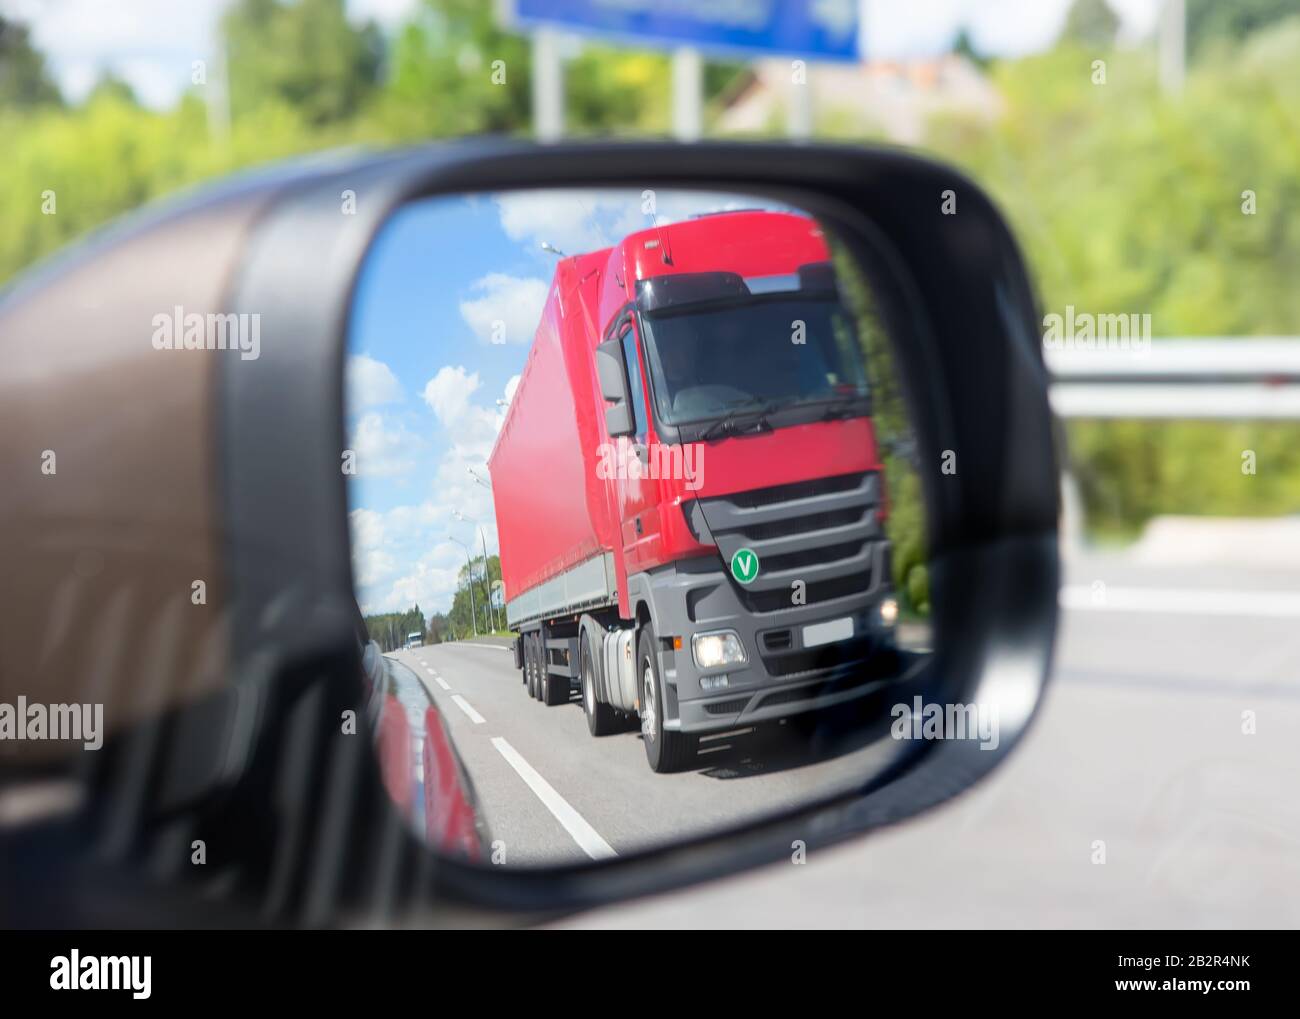 1 Reise: Spiegel, Landschaft im Rückspiegel, Spiegel am LKW, Fahrt, fahren,  Truck, LKWspiegel